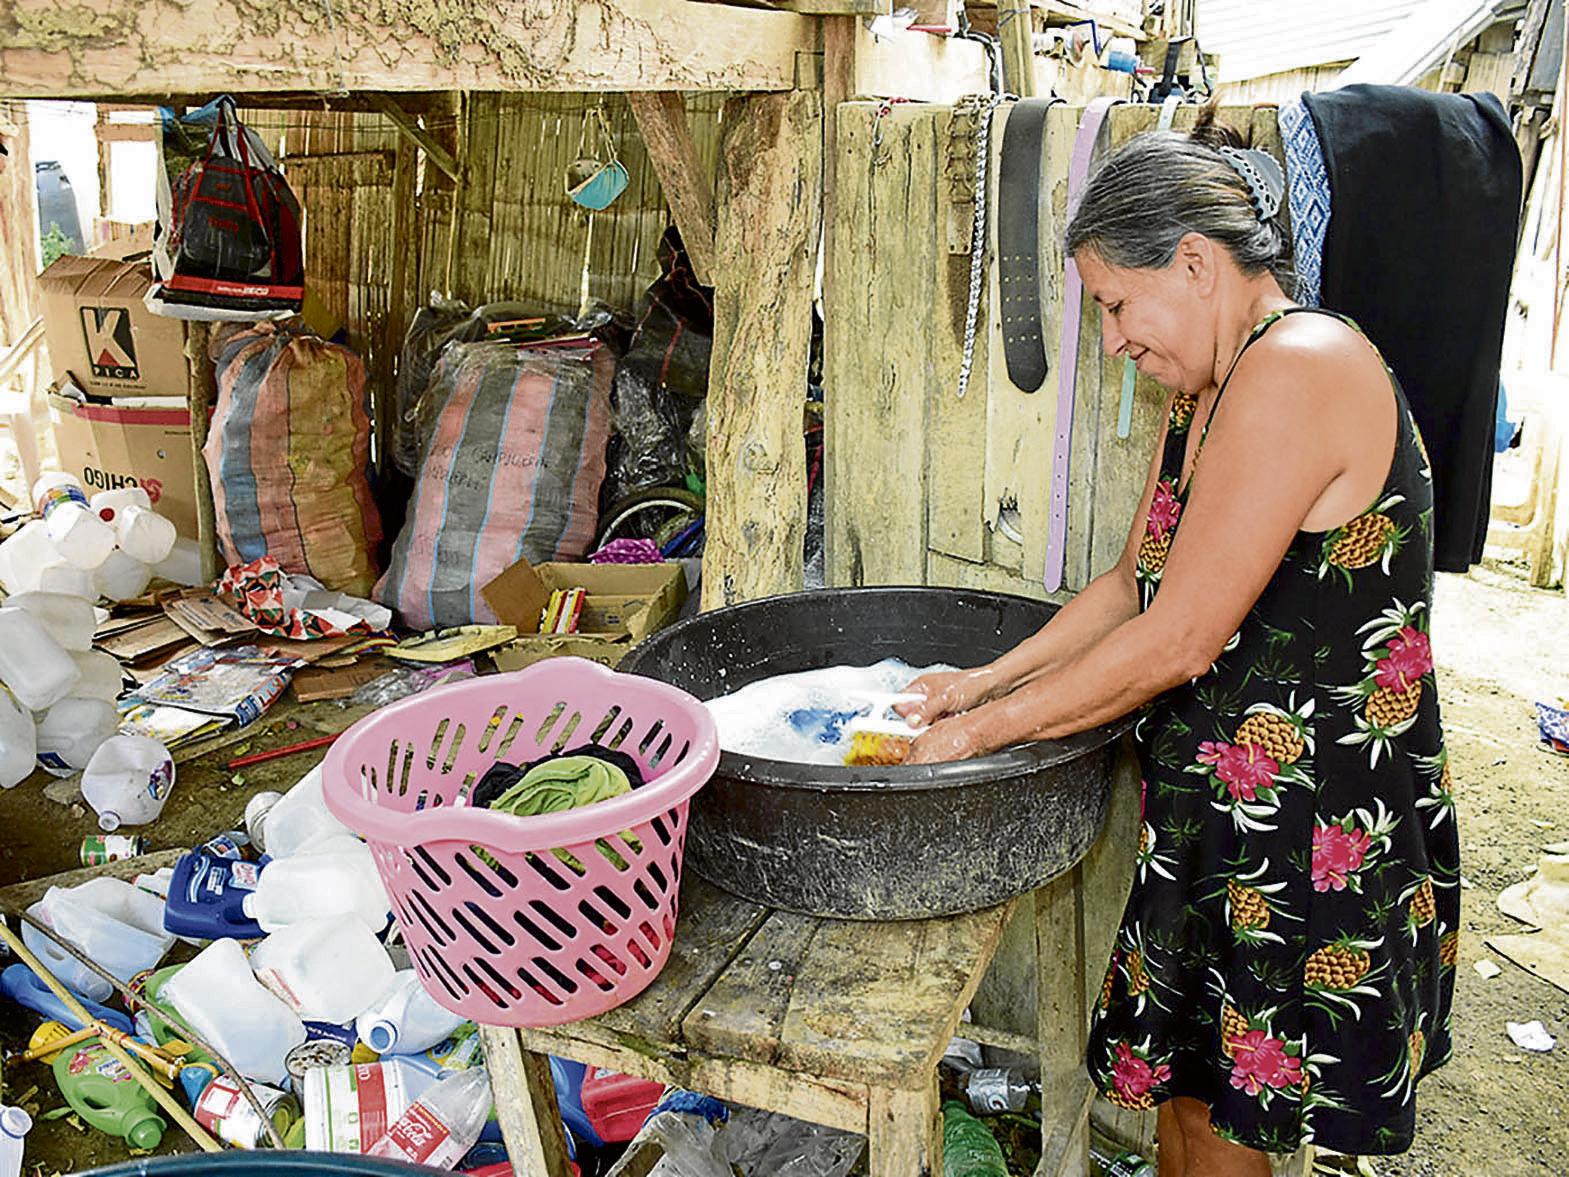 La ropa lava mejor mano” | Diario Ecuador